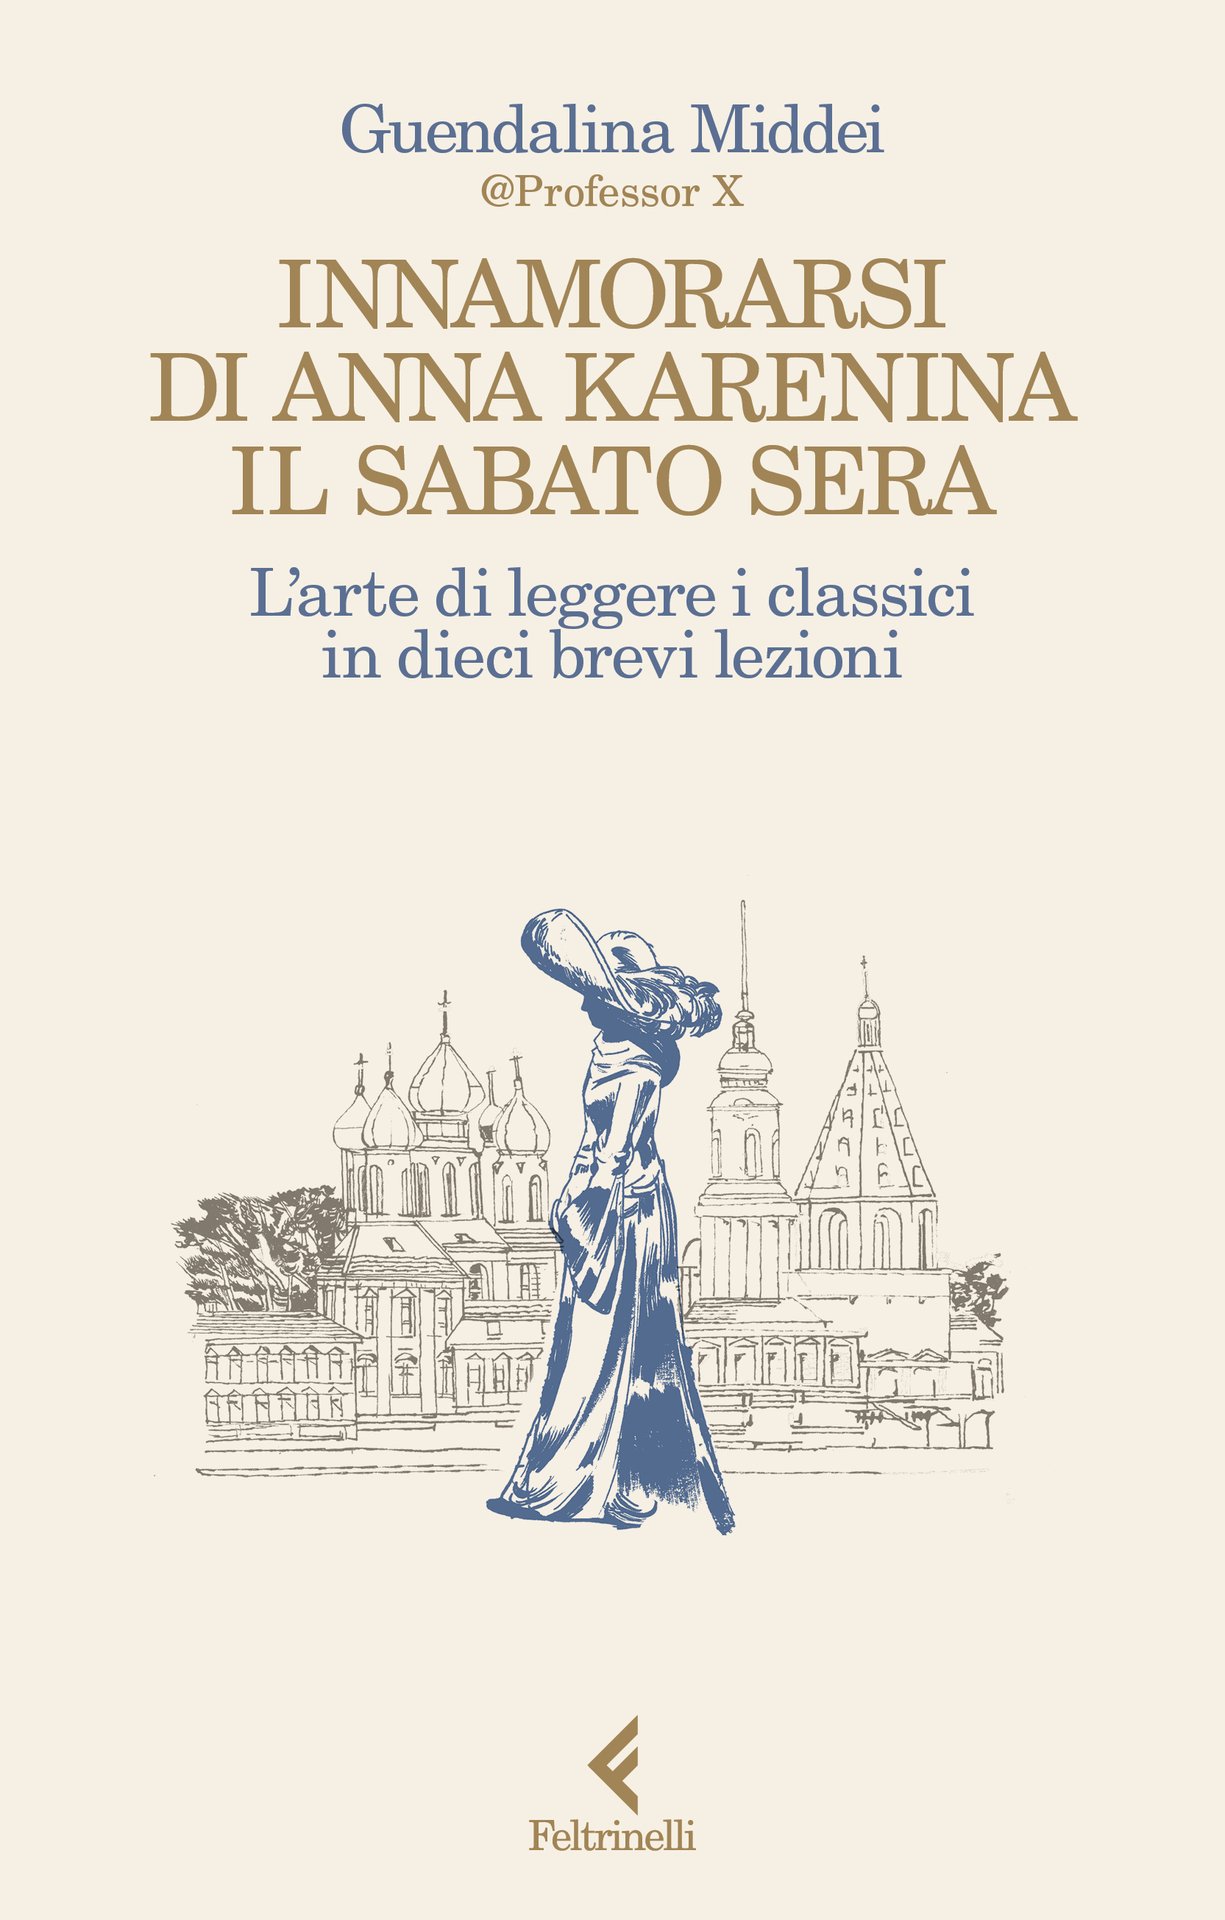 Guendalina Middei presenta "Innamorarsi di Anna Karenina il sabato sera" a Lucera, Circolo Unione in Piazza del Dumo